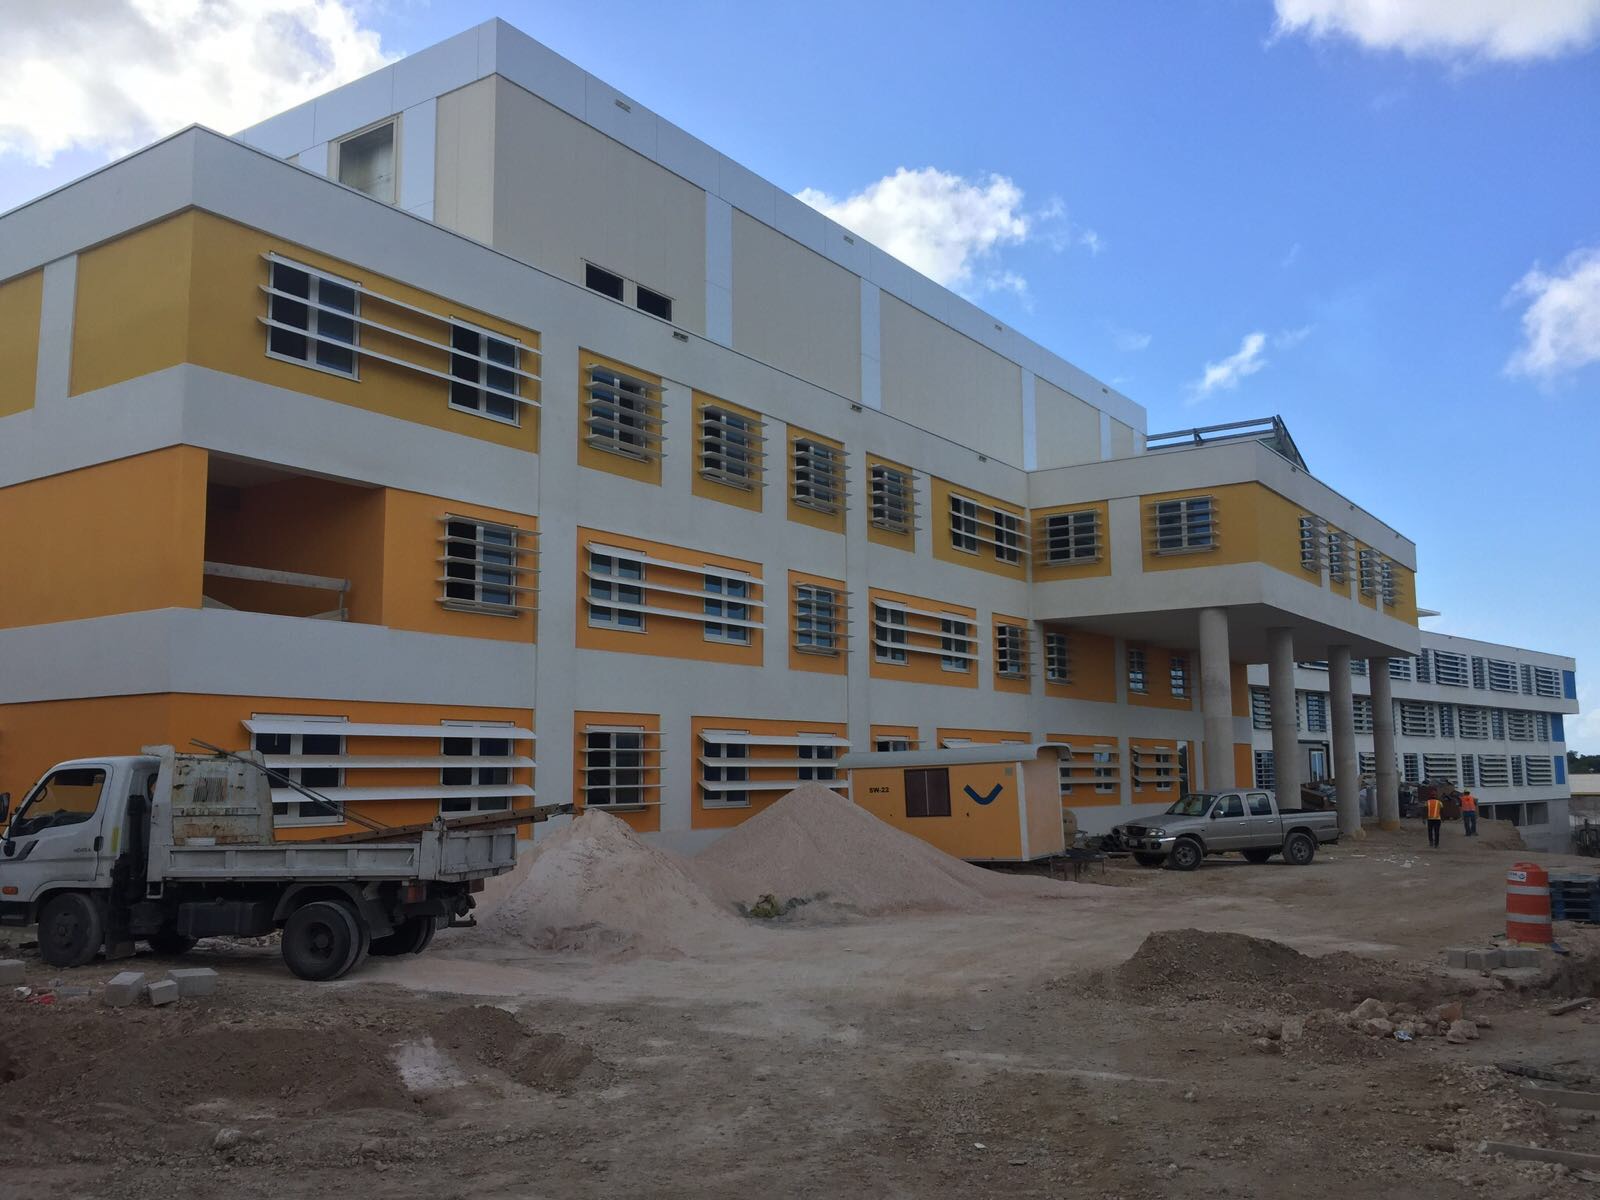 Curacao Medical Center (CMC)